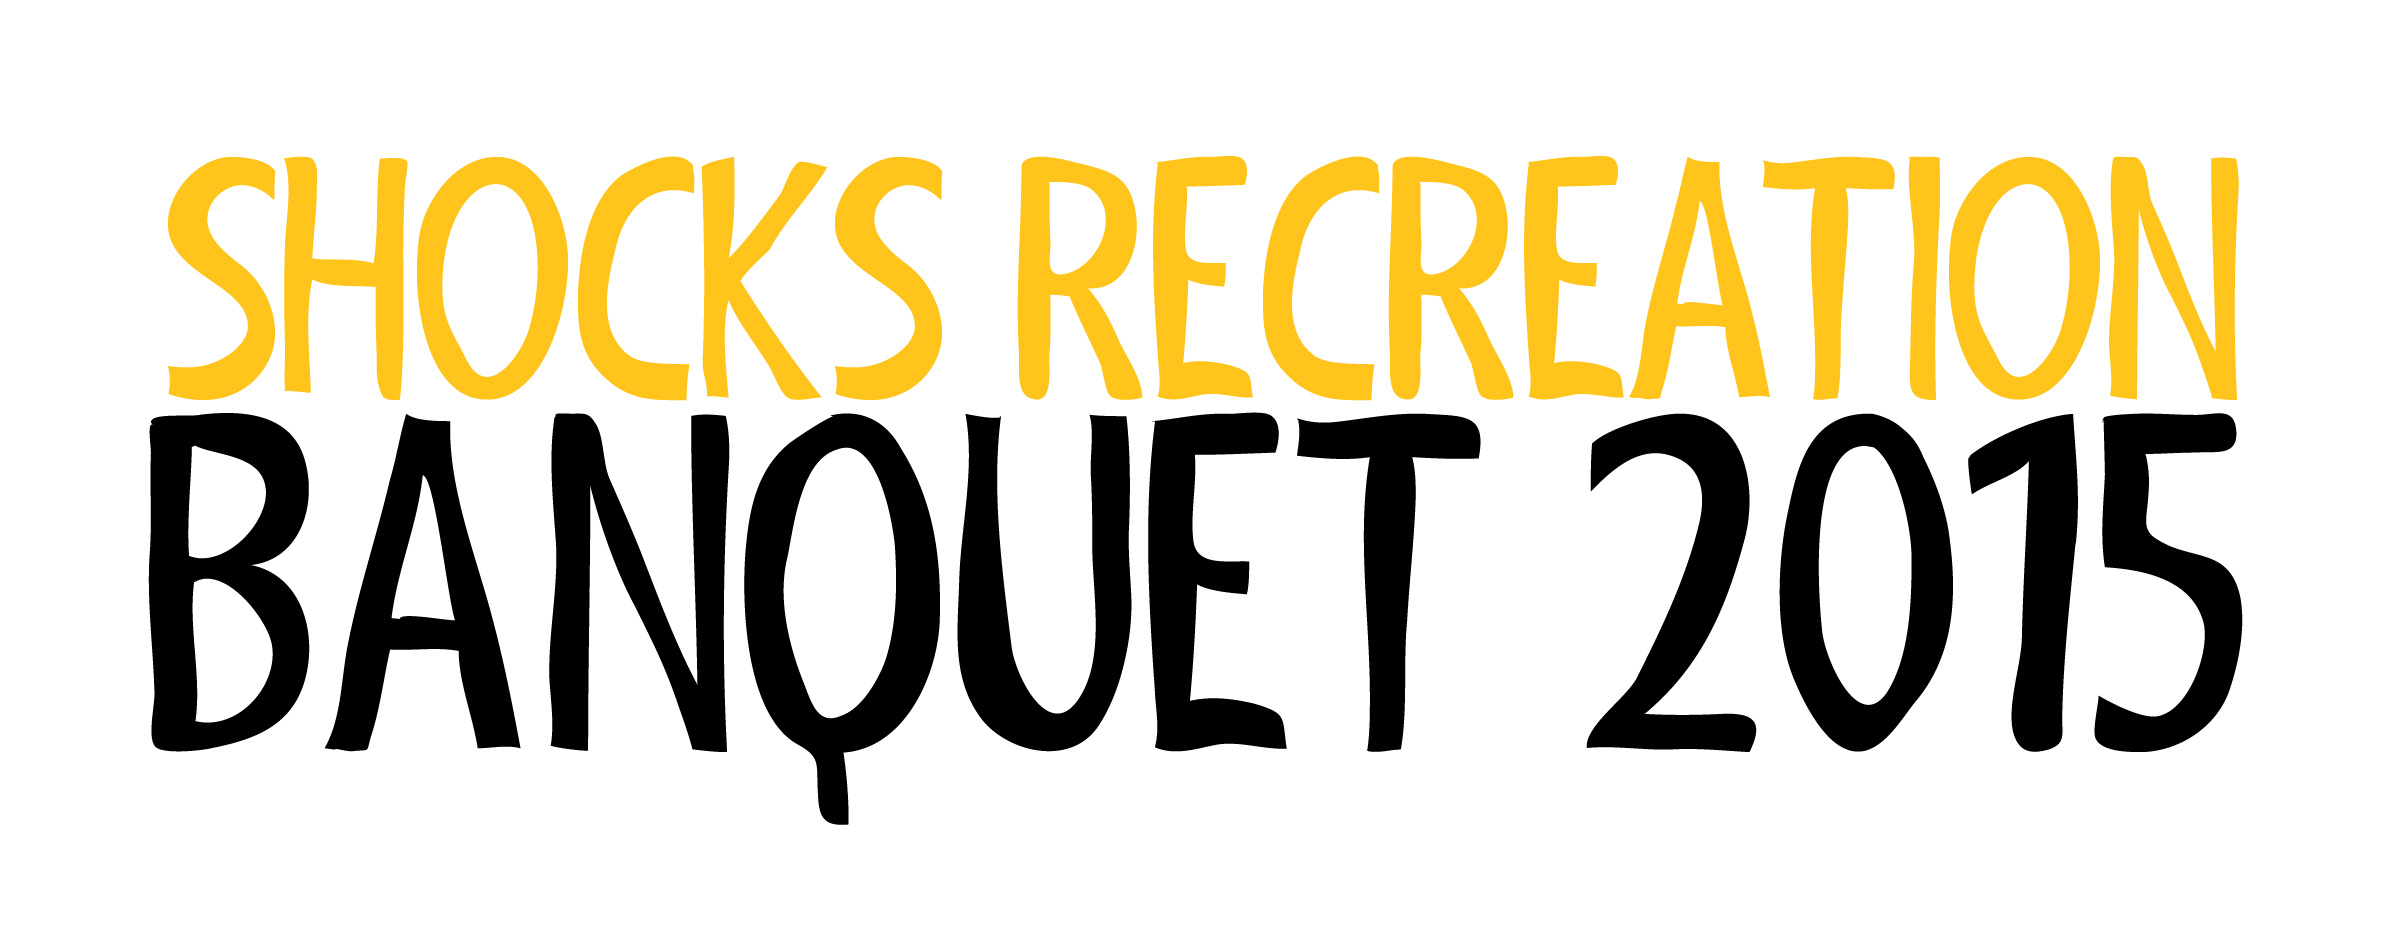 Shocks Recreation Banquet 2015